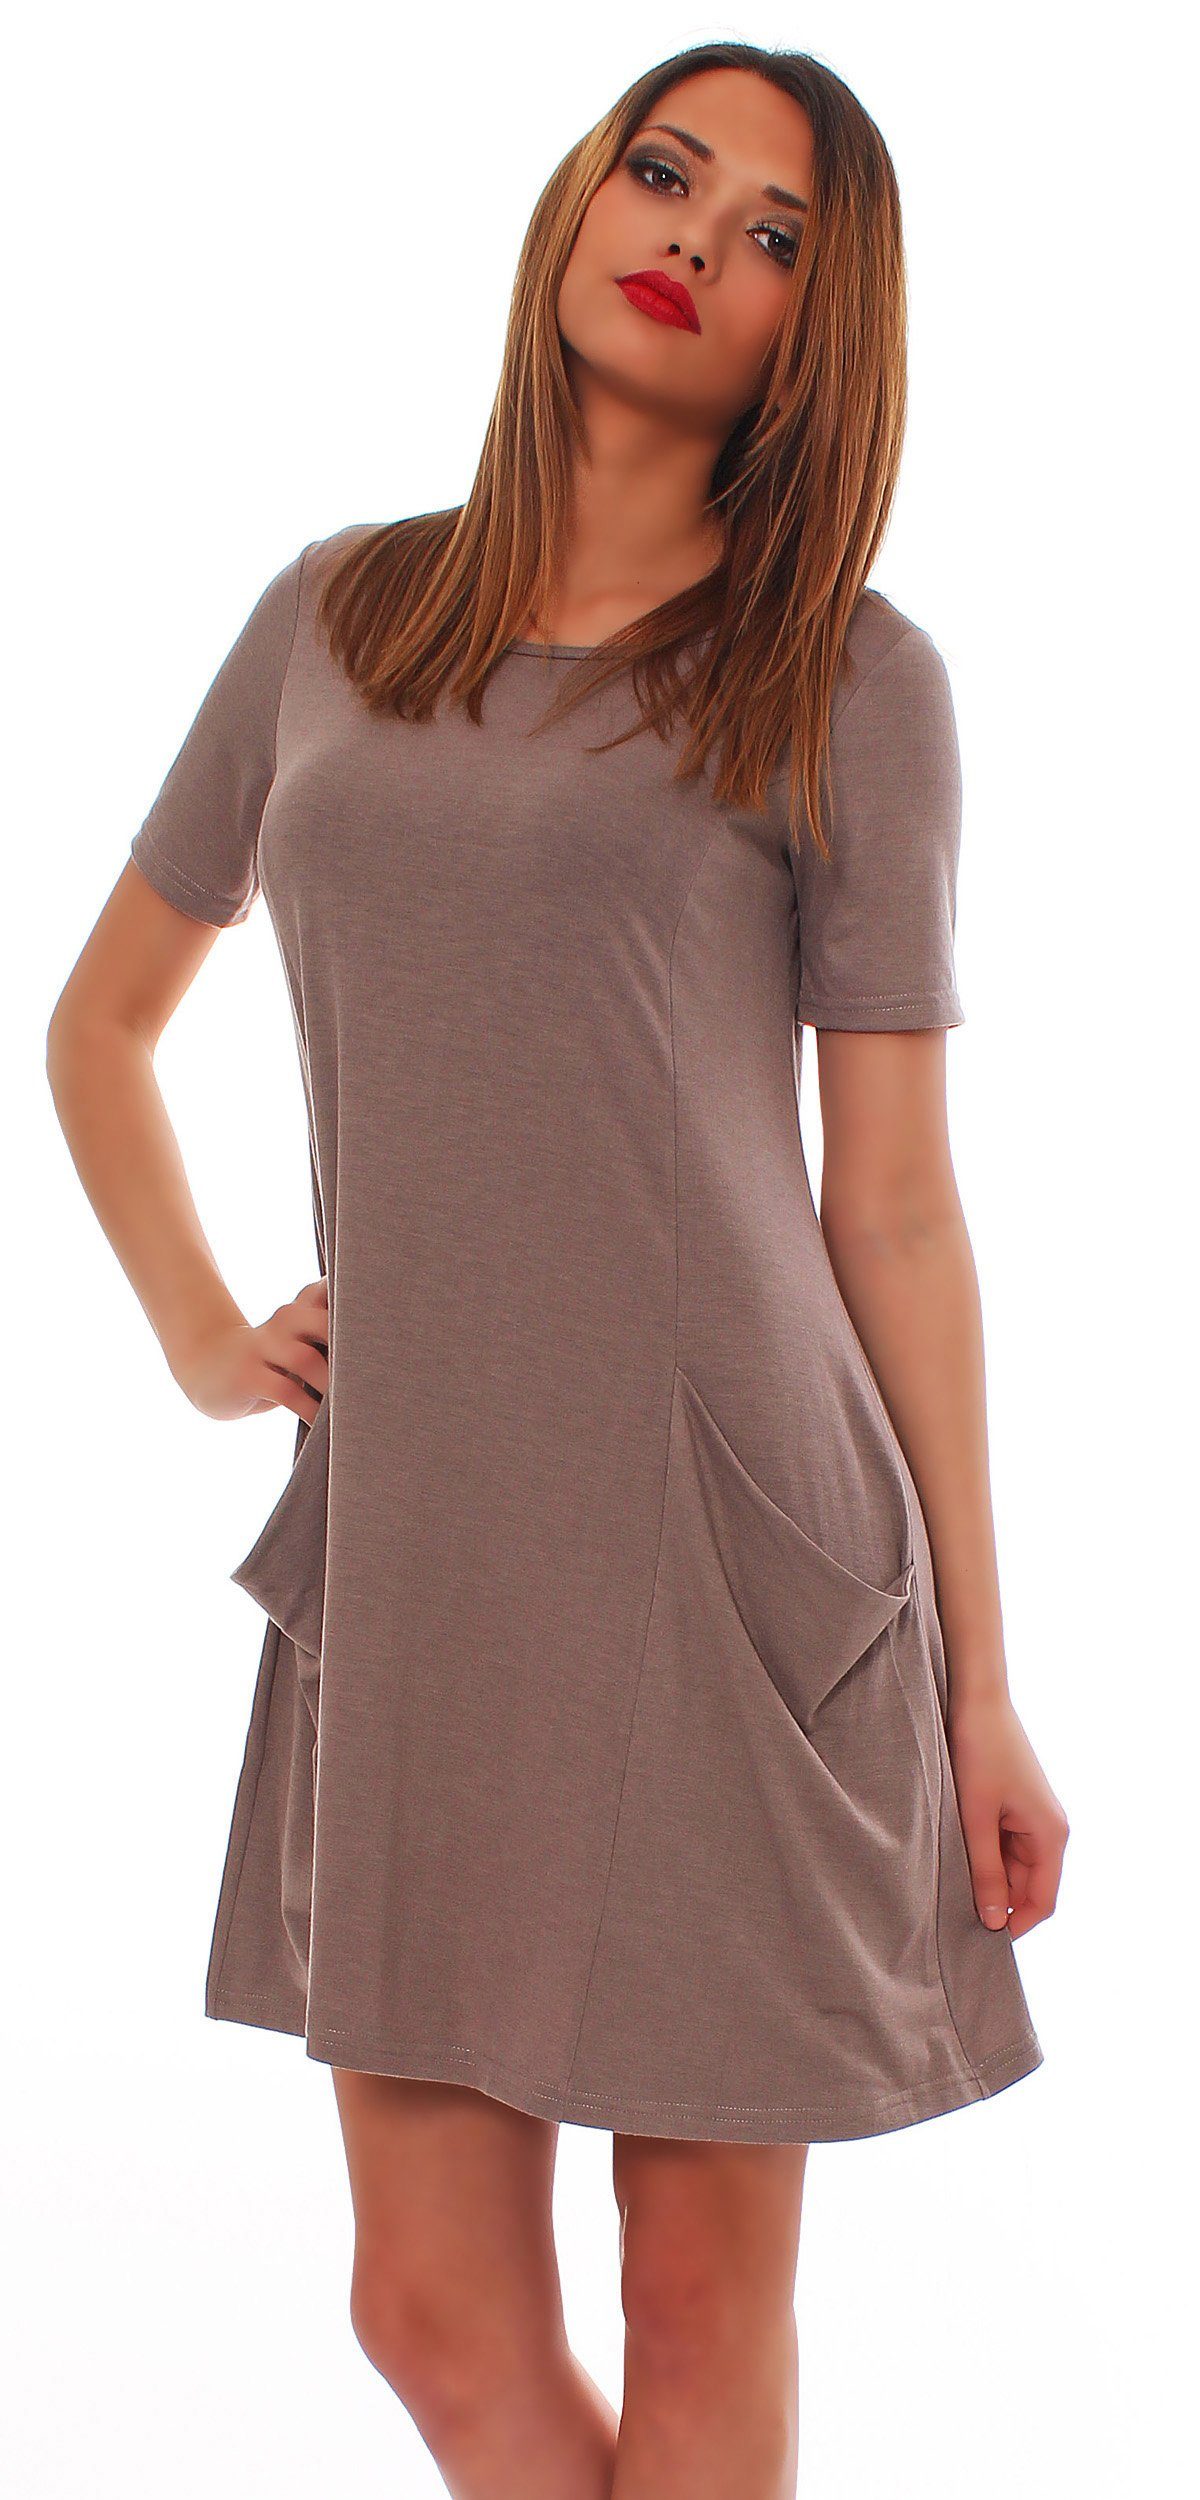 Mississhop A-Linien-Kleid Kleid Tunika Longshirt Pulli Tunika Minikleid mit Taschen 6514